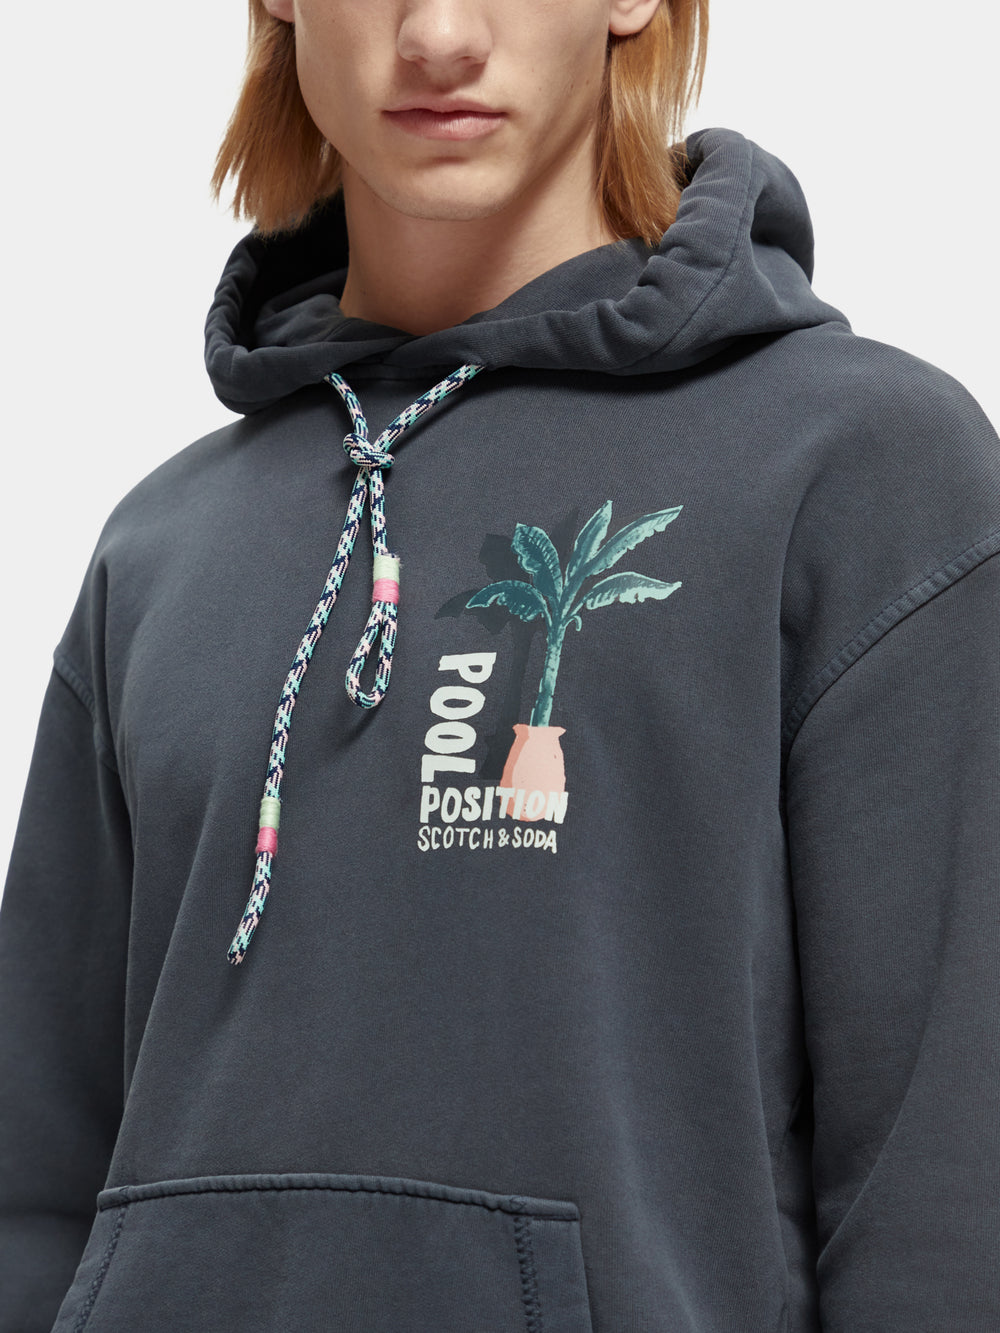 Garment-dyed artwork hoodie - Scotch & Soda AU